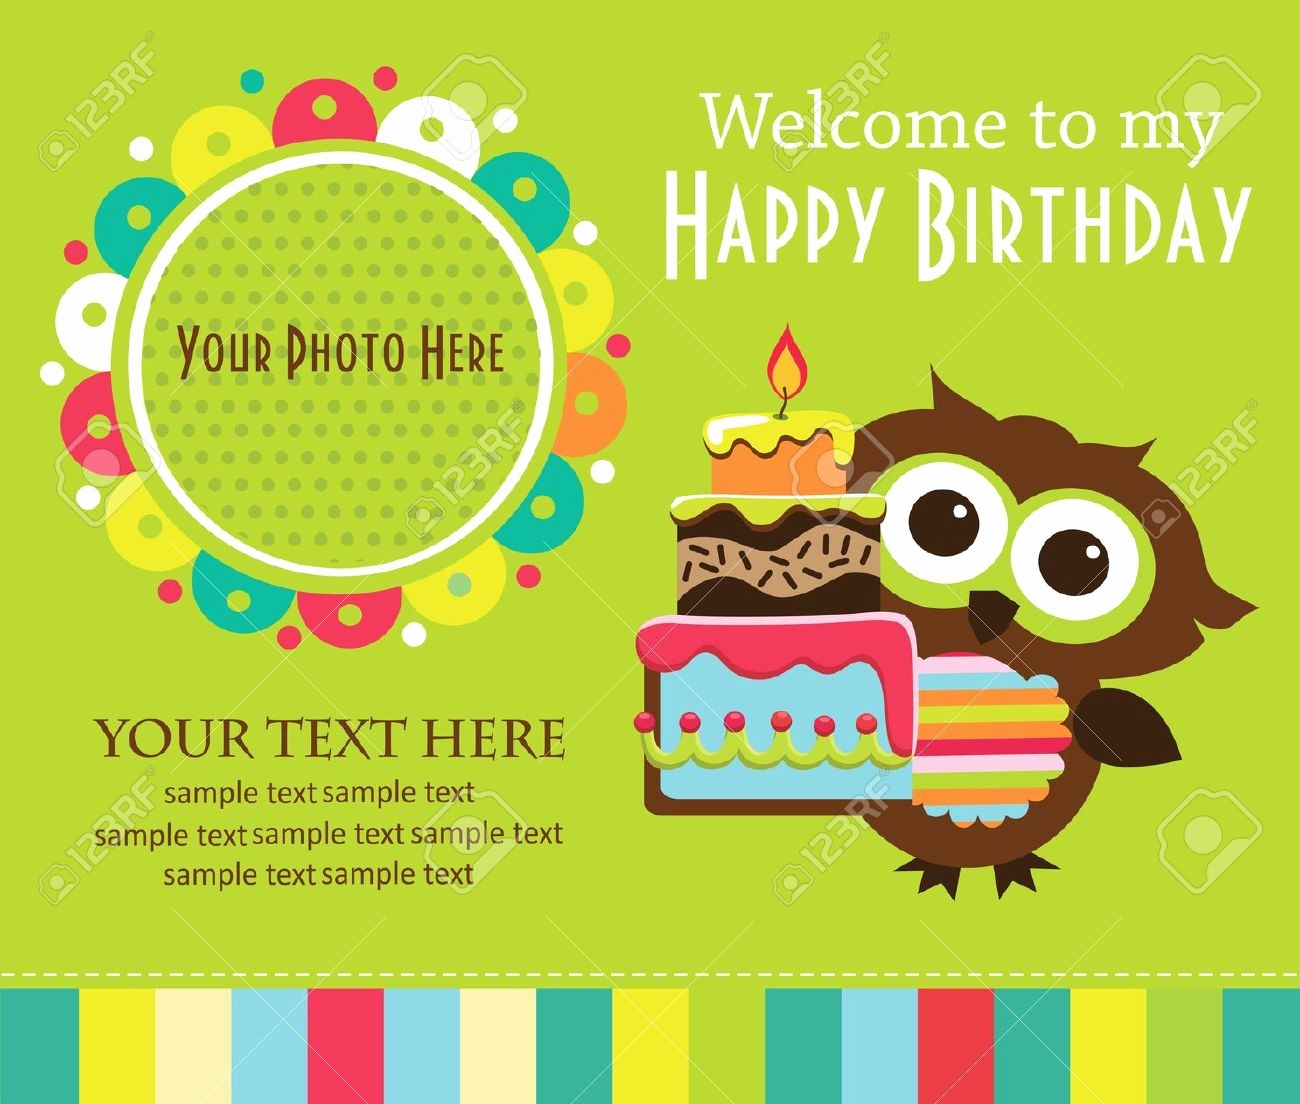 Kids Birthday Card Ideas Ideas For Boys Birthday Card Fresh Birthday Greeting Cards For Boys